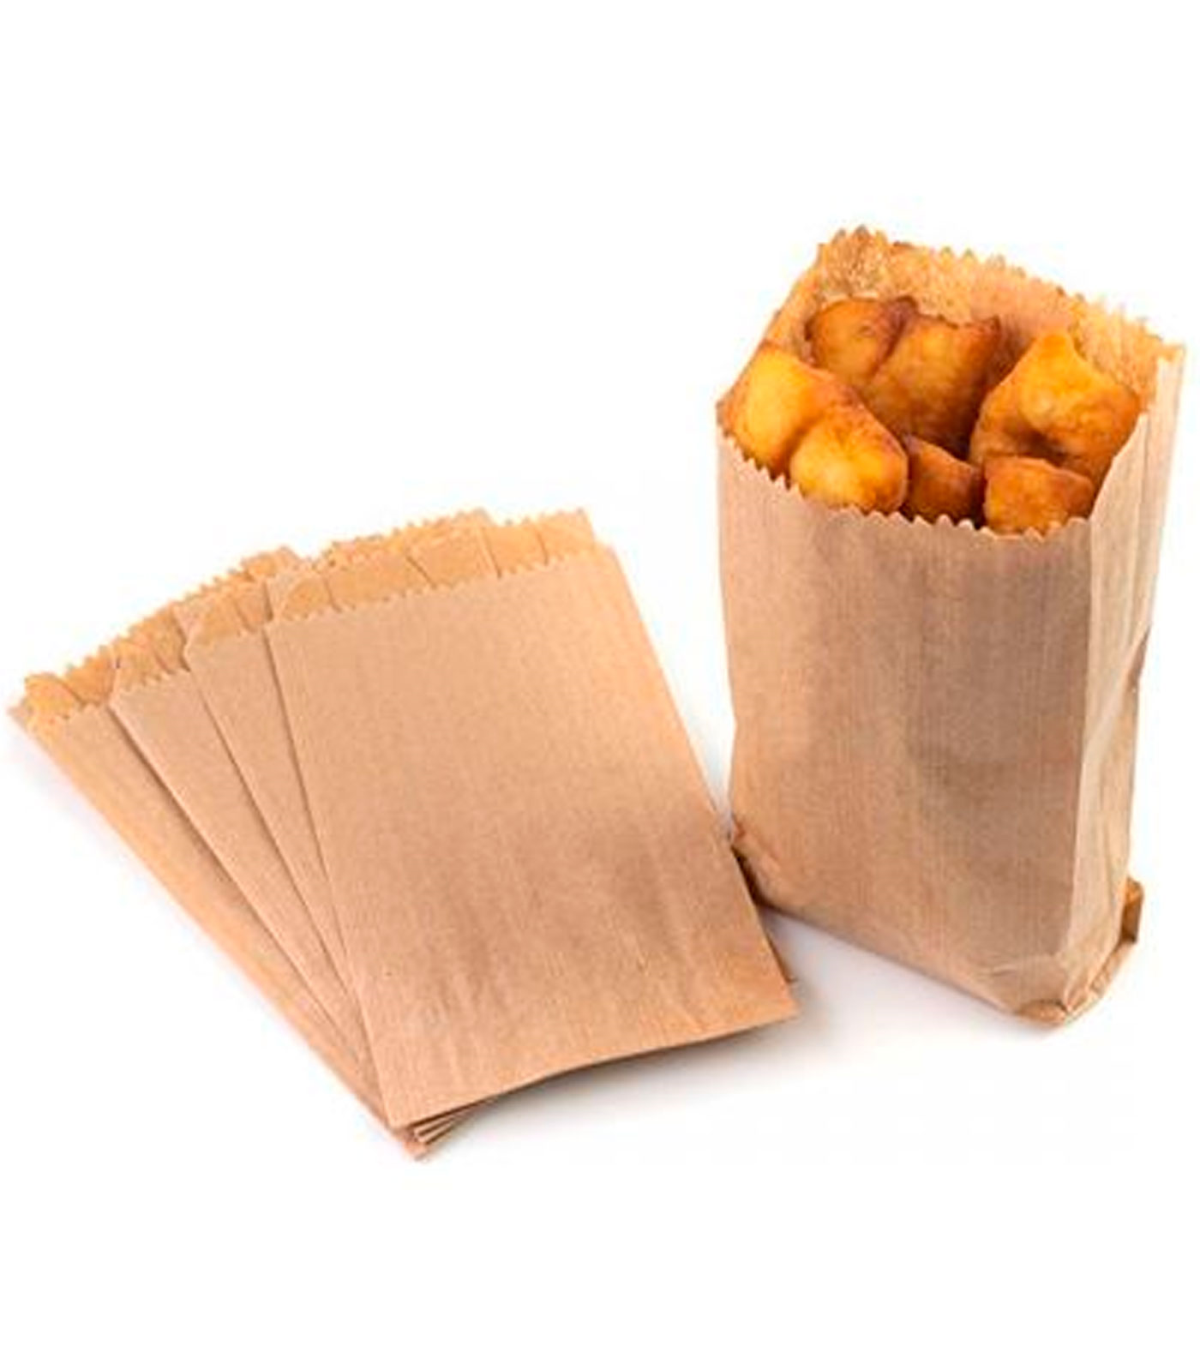 Tipos de bolsas de papel - Bolsas para comercios y envases alimentarios -  COVERPAN